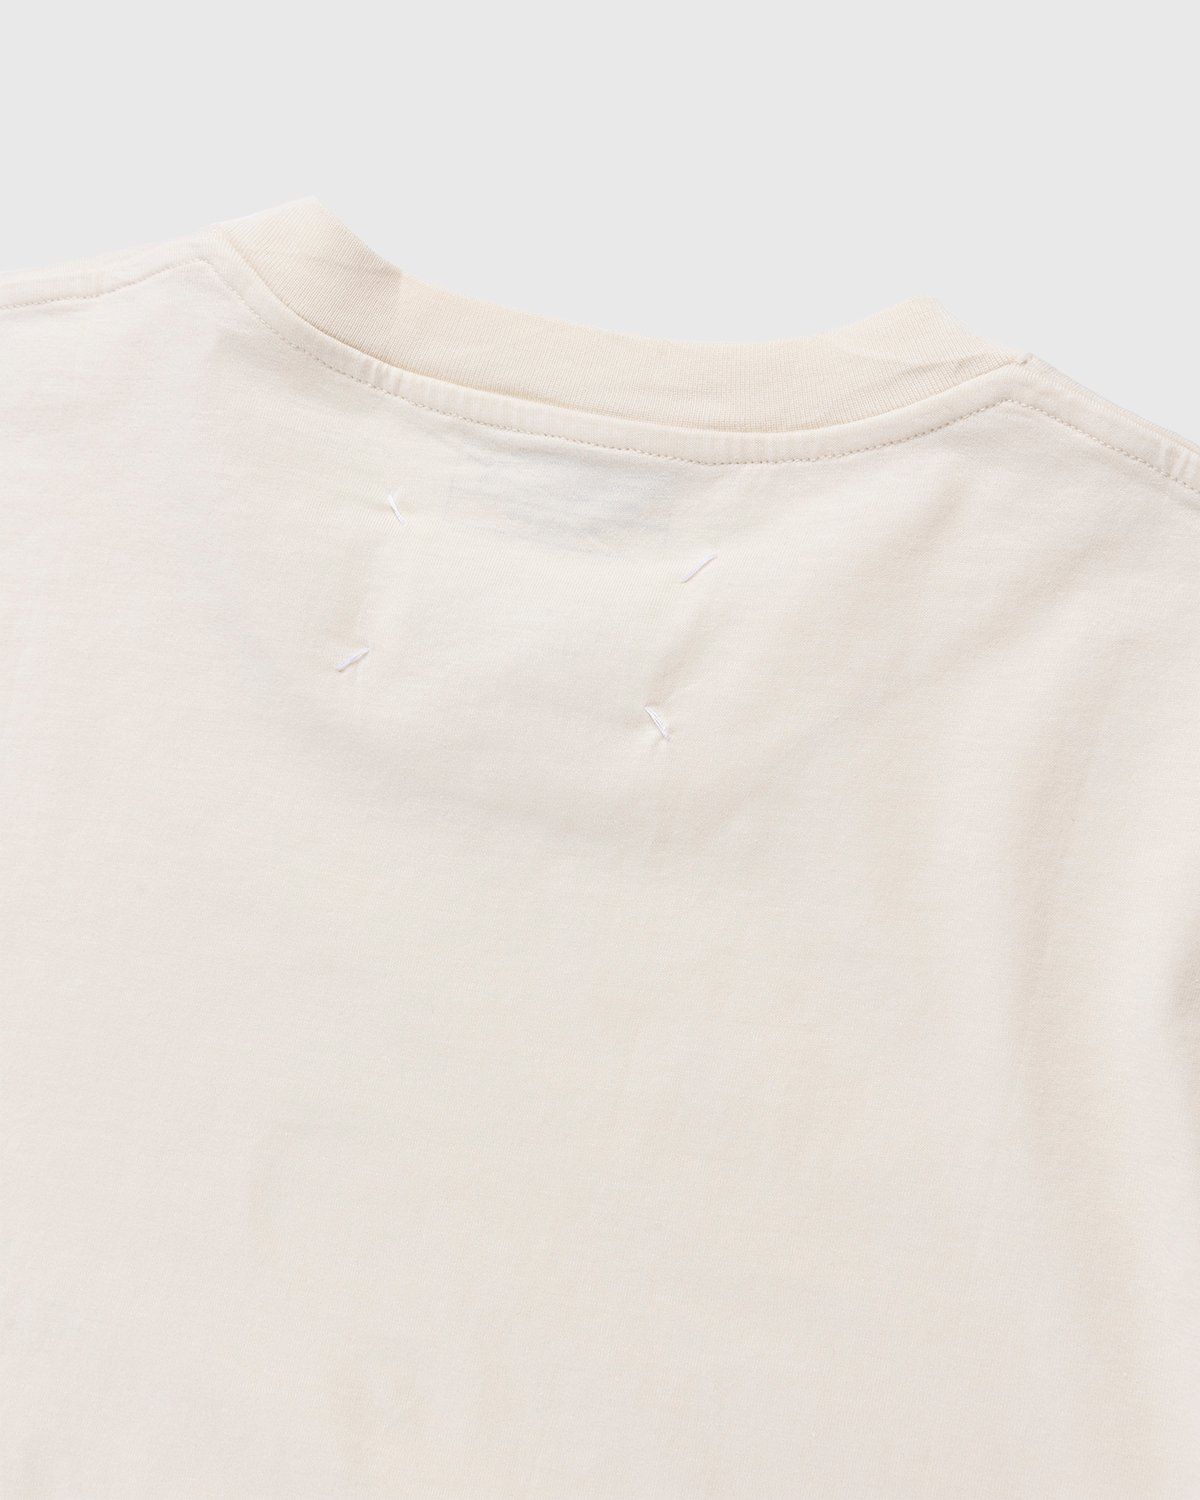 Maison Margiela – Shades of White T-Shirts 3 Pack Multi - Tops - White - Image 5